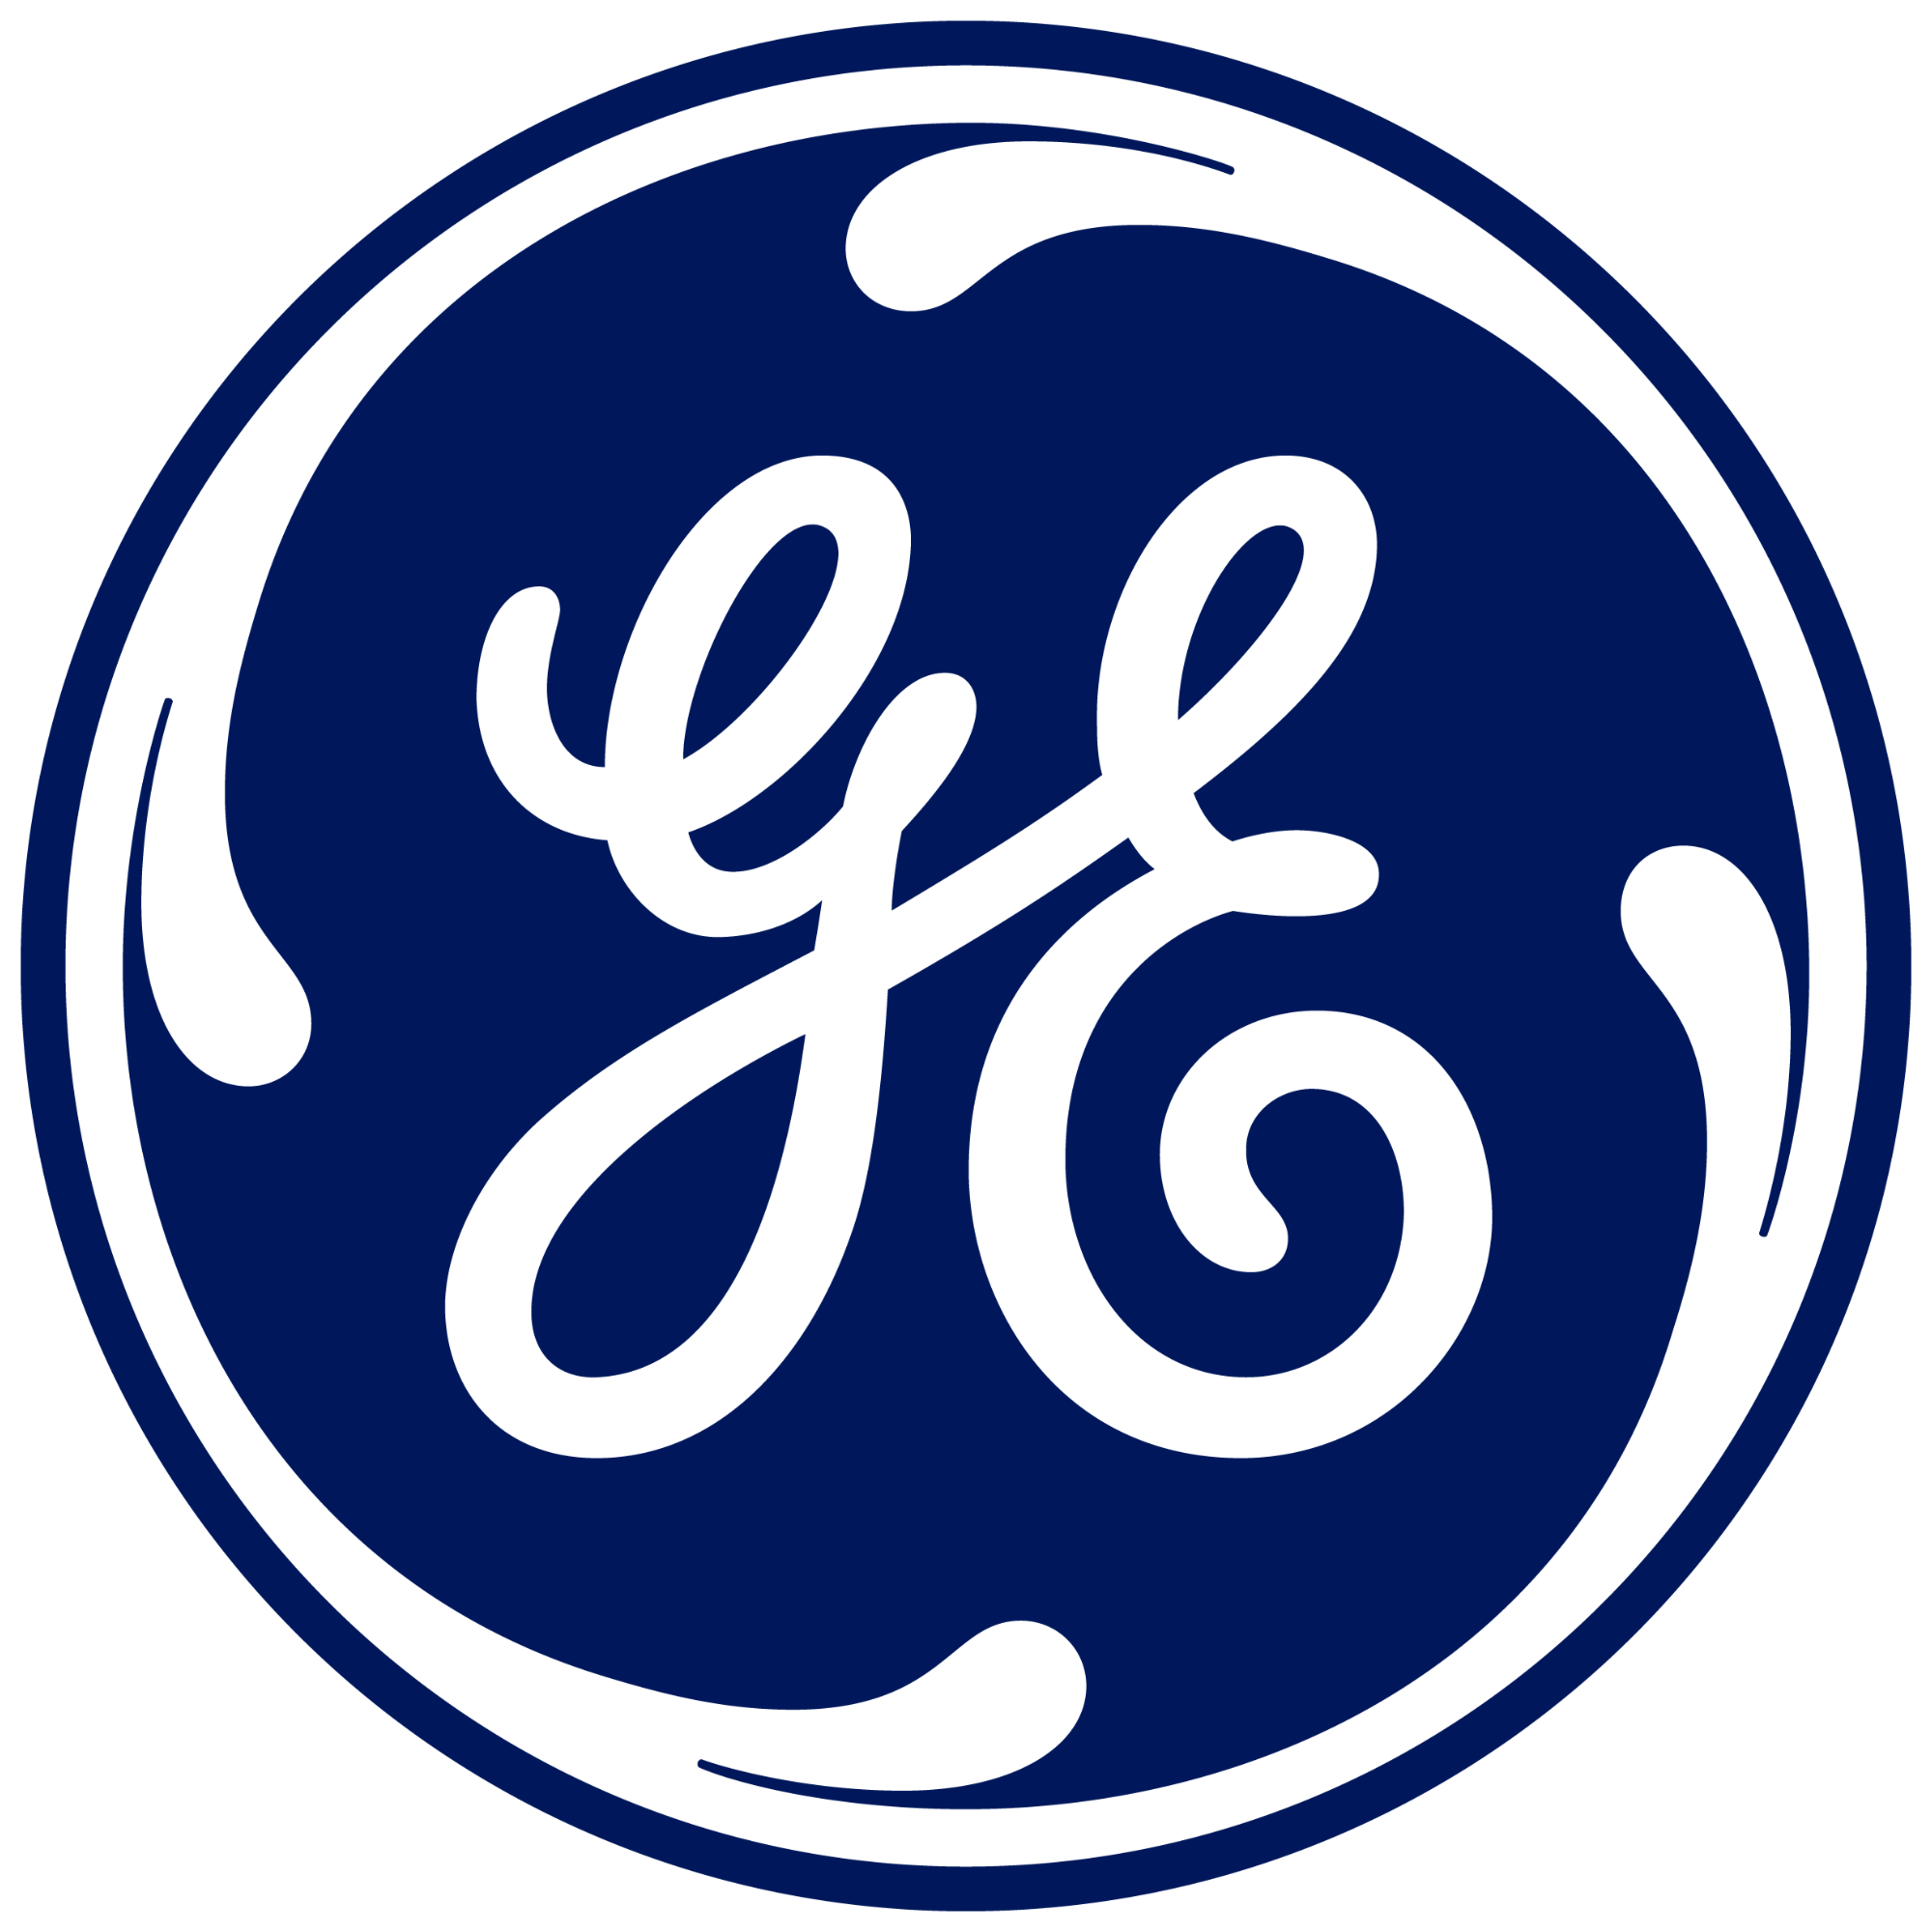 C logo ge blue